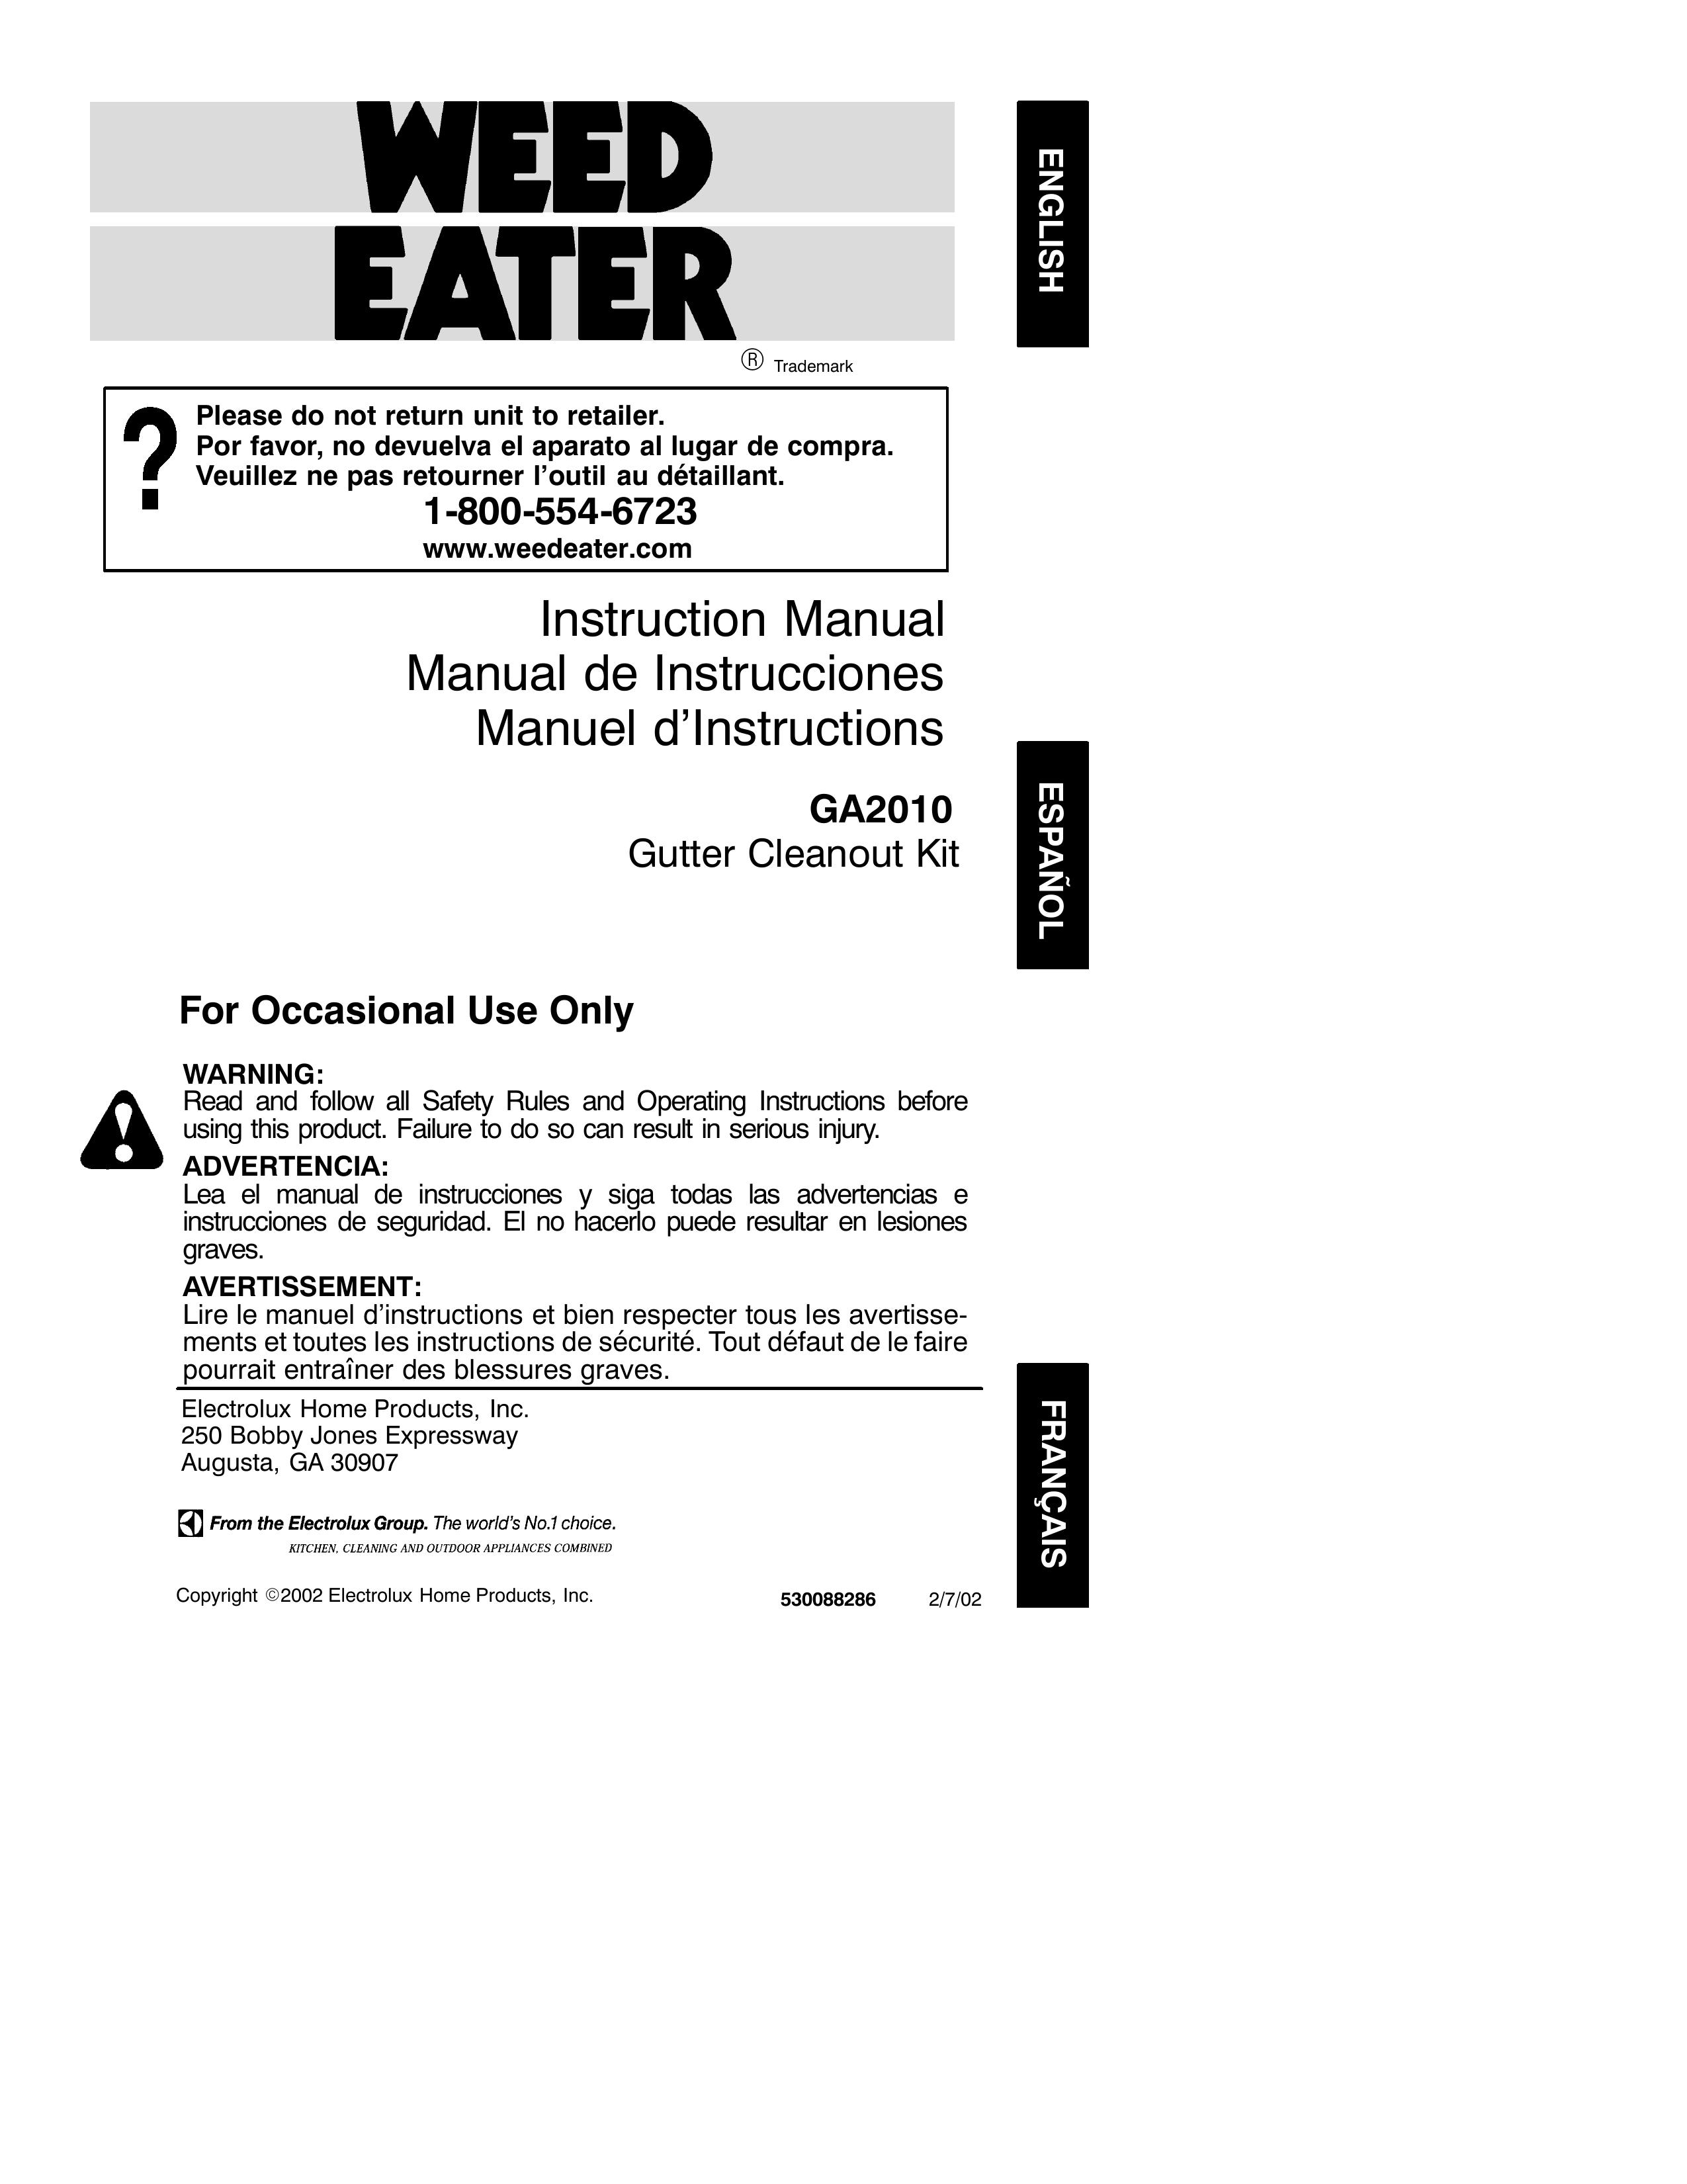 Weed Eater GA2010 Yogurt Maker User Manual